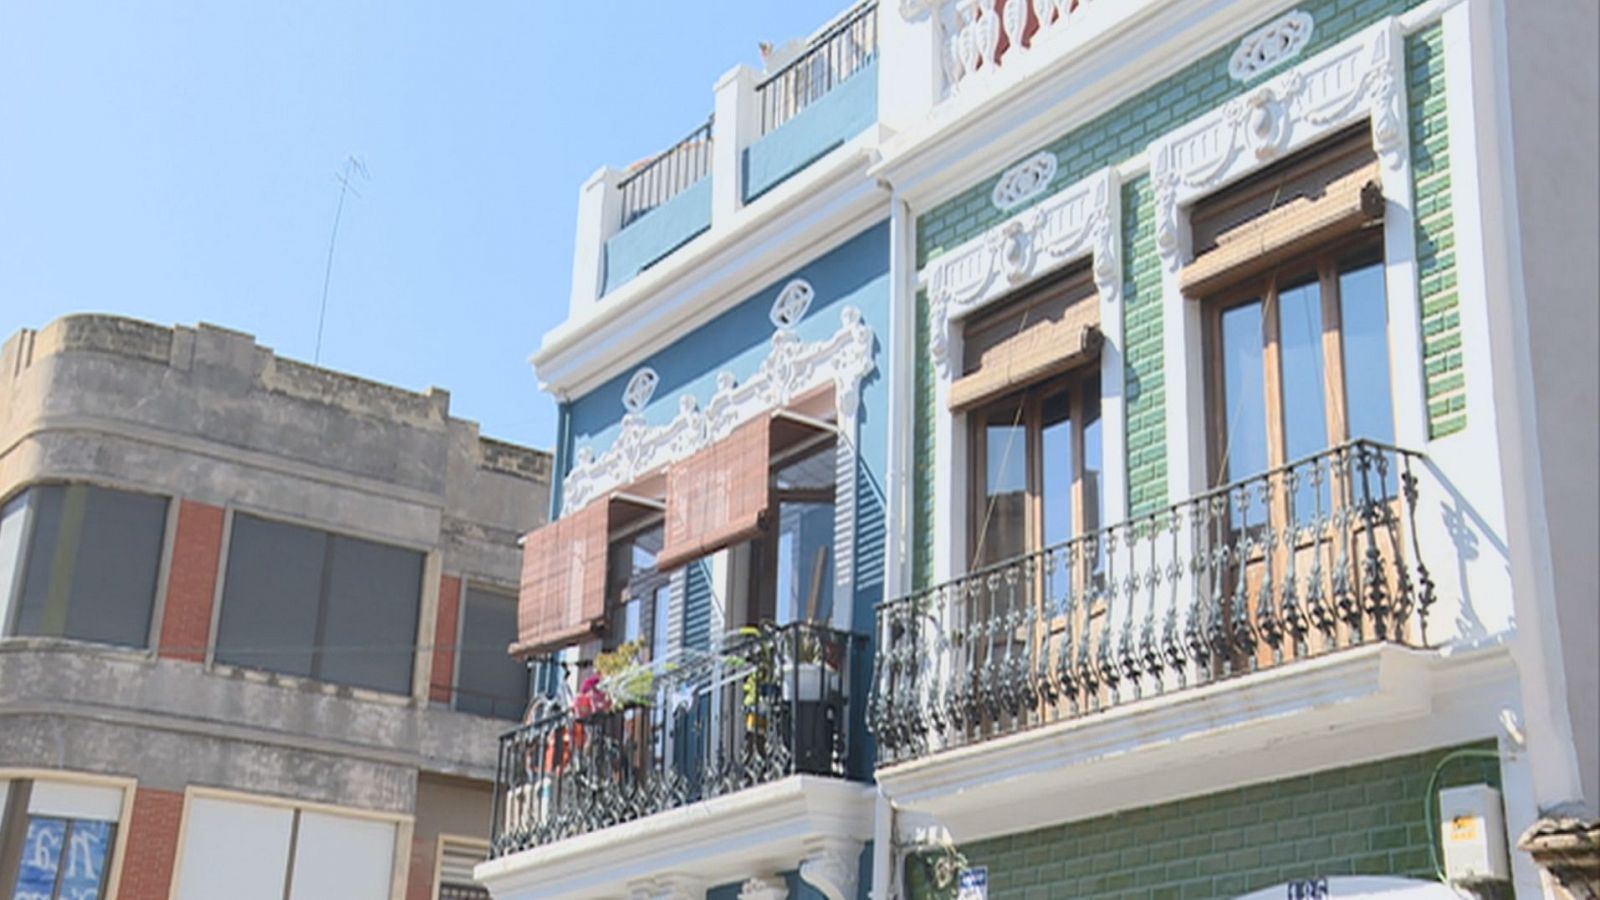 Millorar la convivència en els barris de la ciutat de València